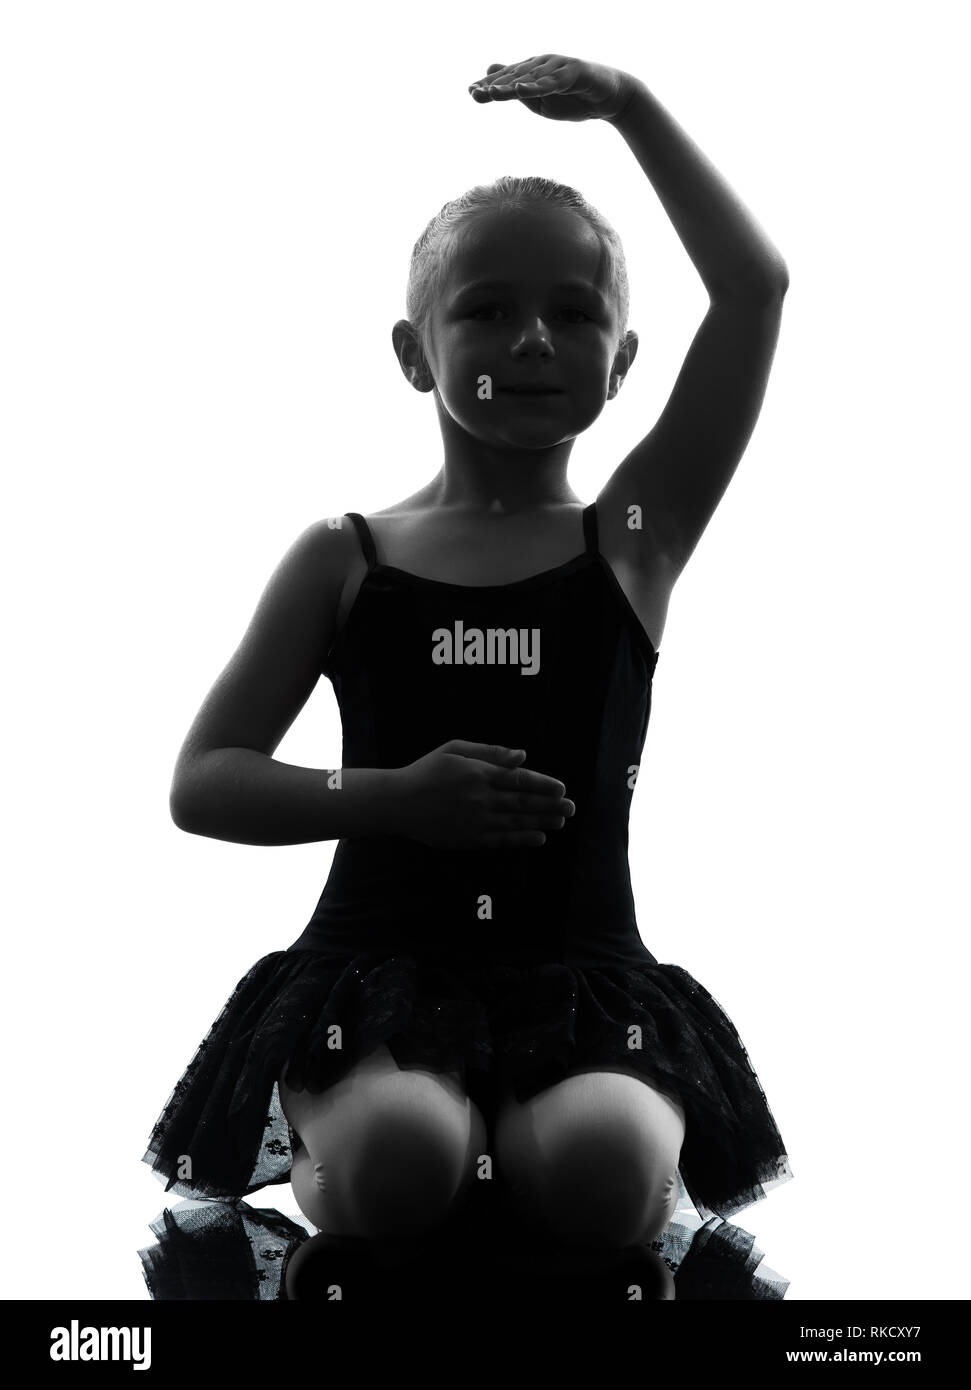 Una ragazzina ballerina ballerina dancing in silhouette su sfondo bianco Foto Stock